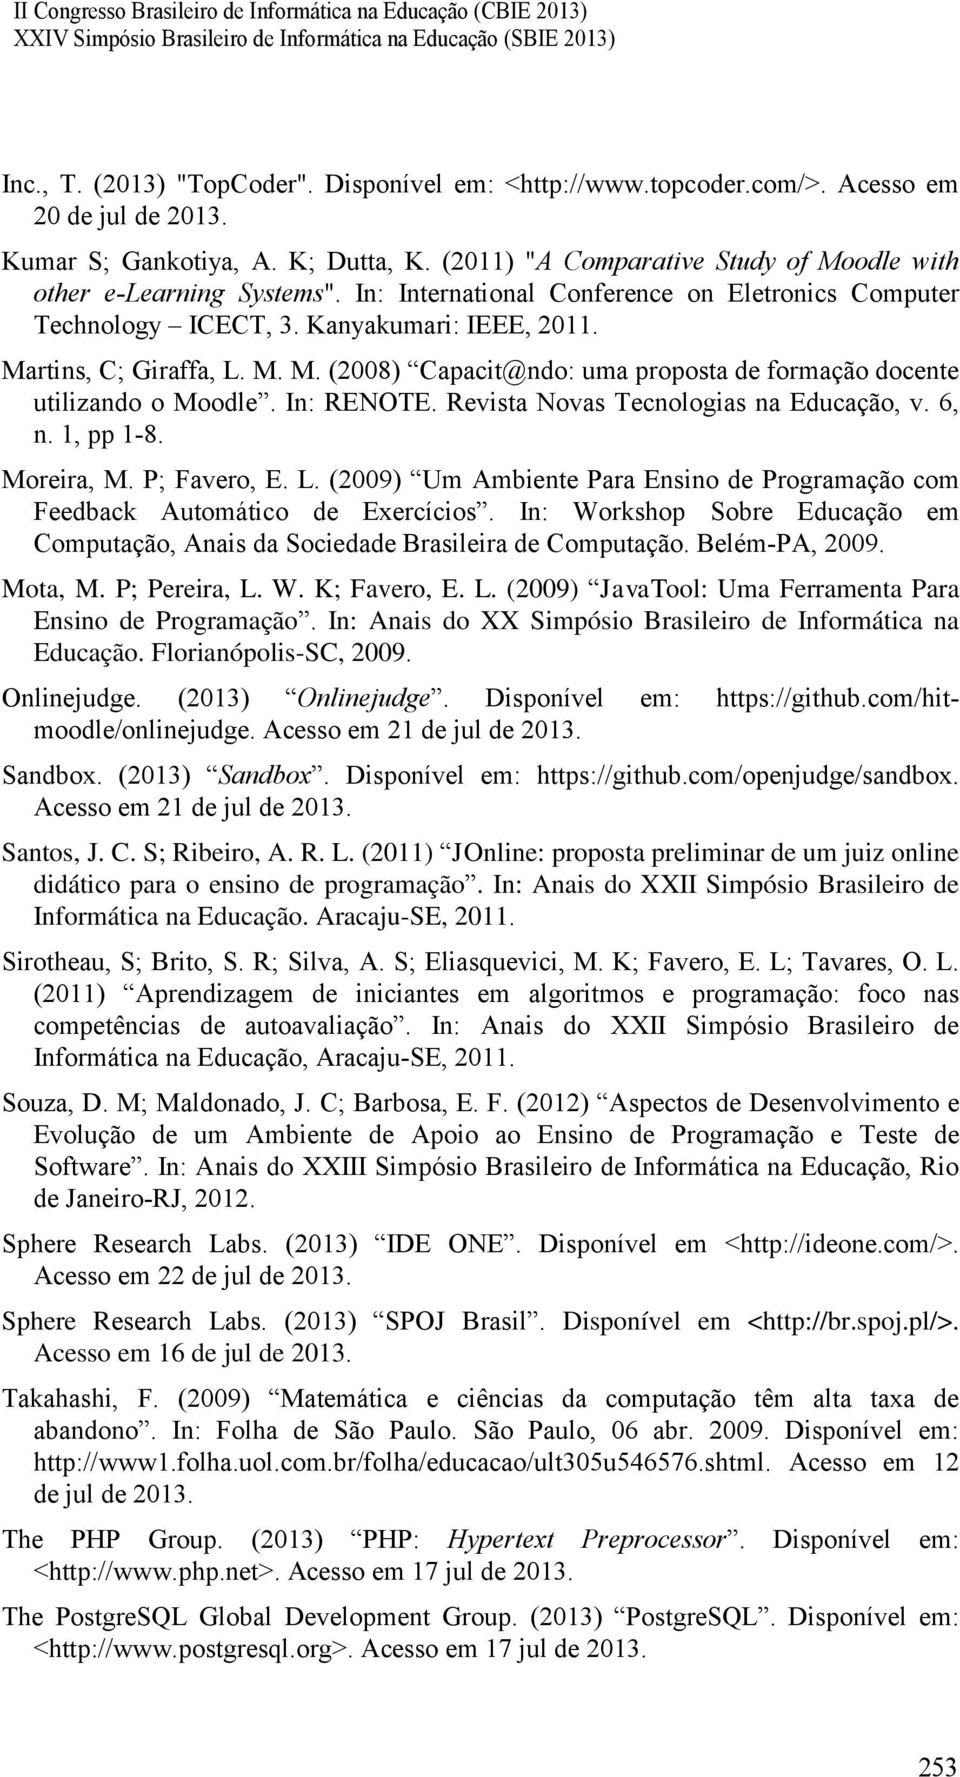 In: RENOTE. Revista Novas Tecnologias na Educação, v. 6, n. 1, pp 1-8. Moreira, M. P; Favero, E. L. (2009) Um Ambiente Para Ensino de Programação com Feedback Automático de Exercícios.